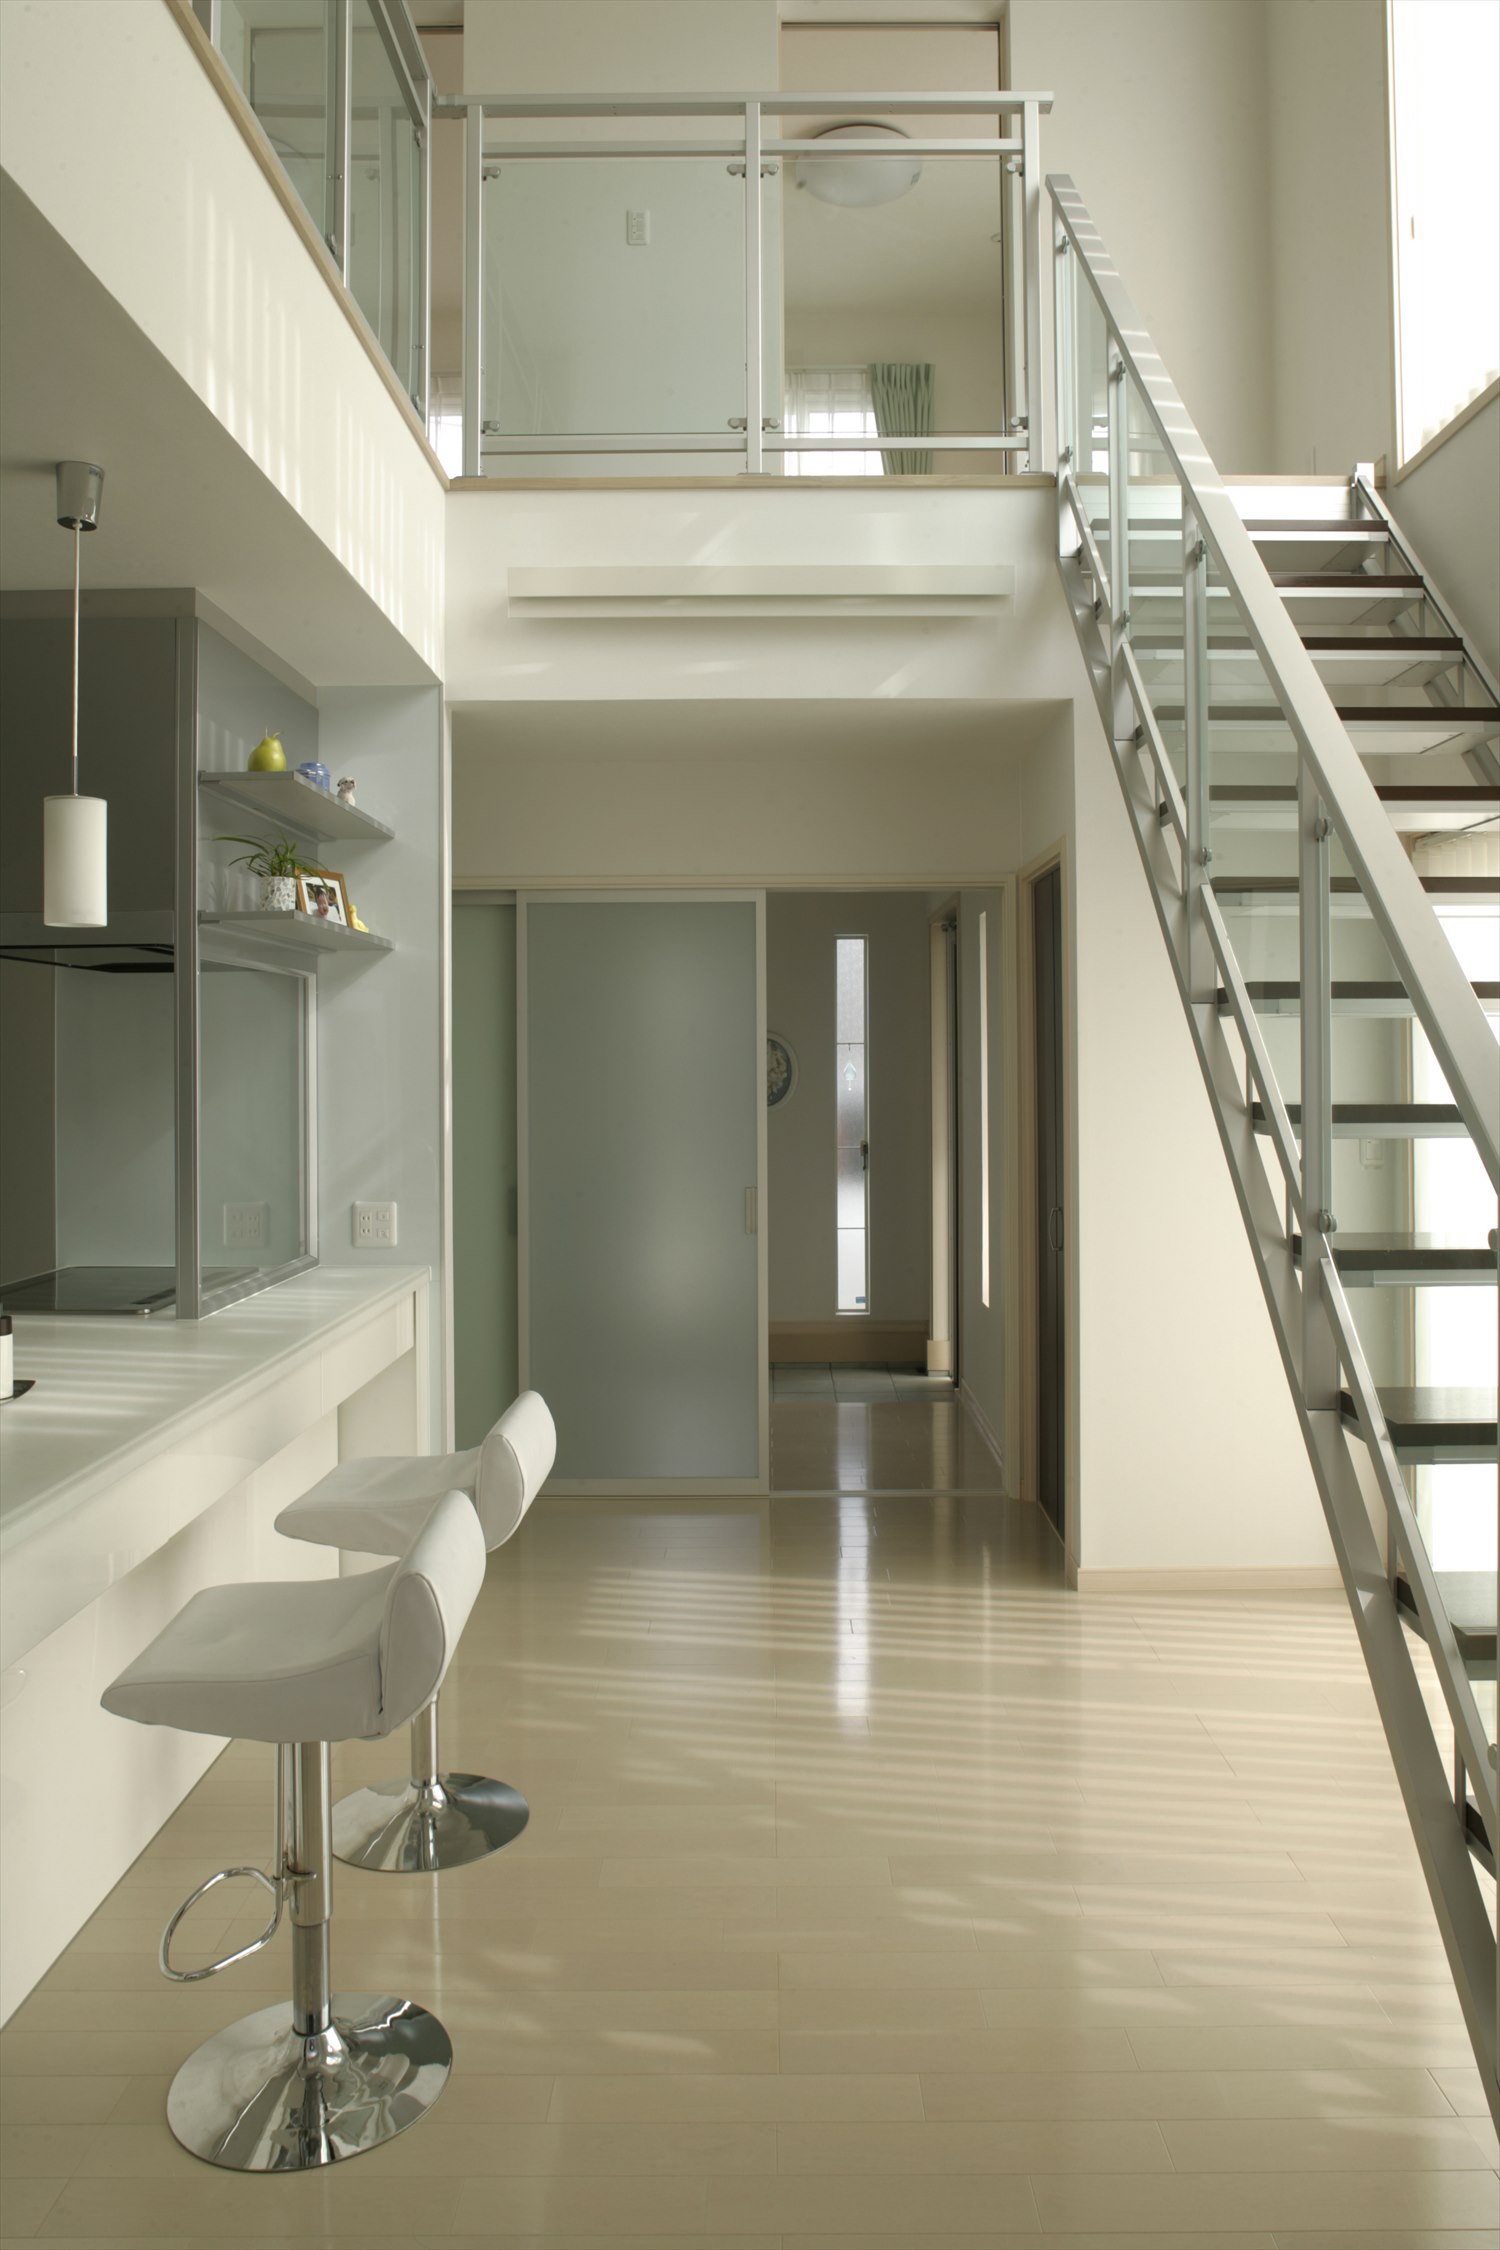 完全自由設計の白を基調としたシンプルなキッチン、リビング階段の新築事例